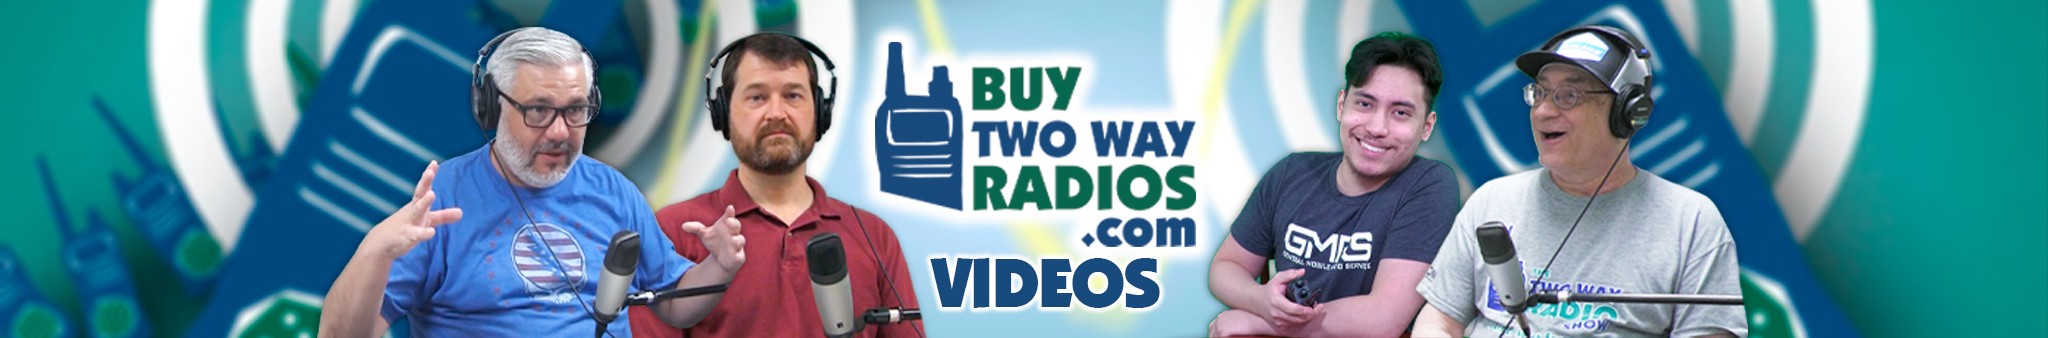 Buy Two Way Radios Videos